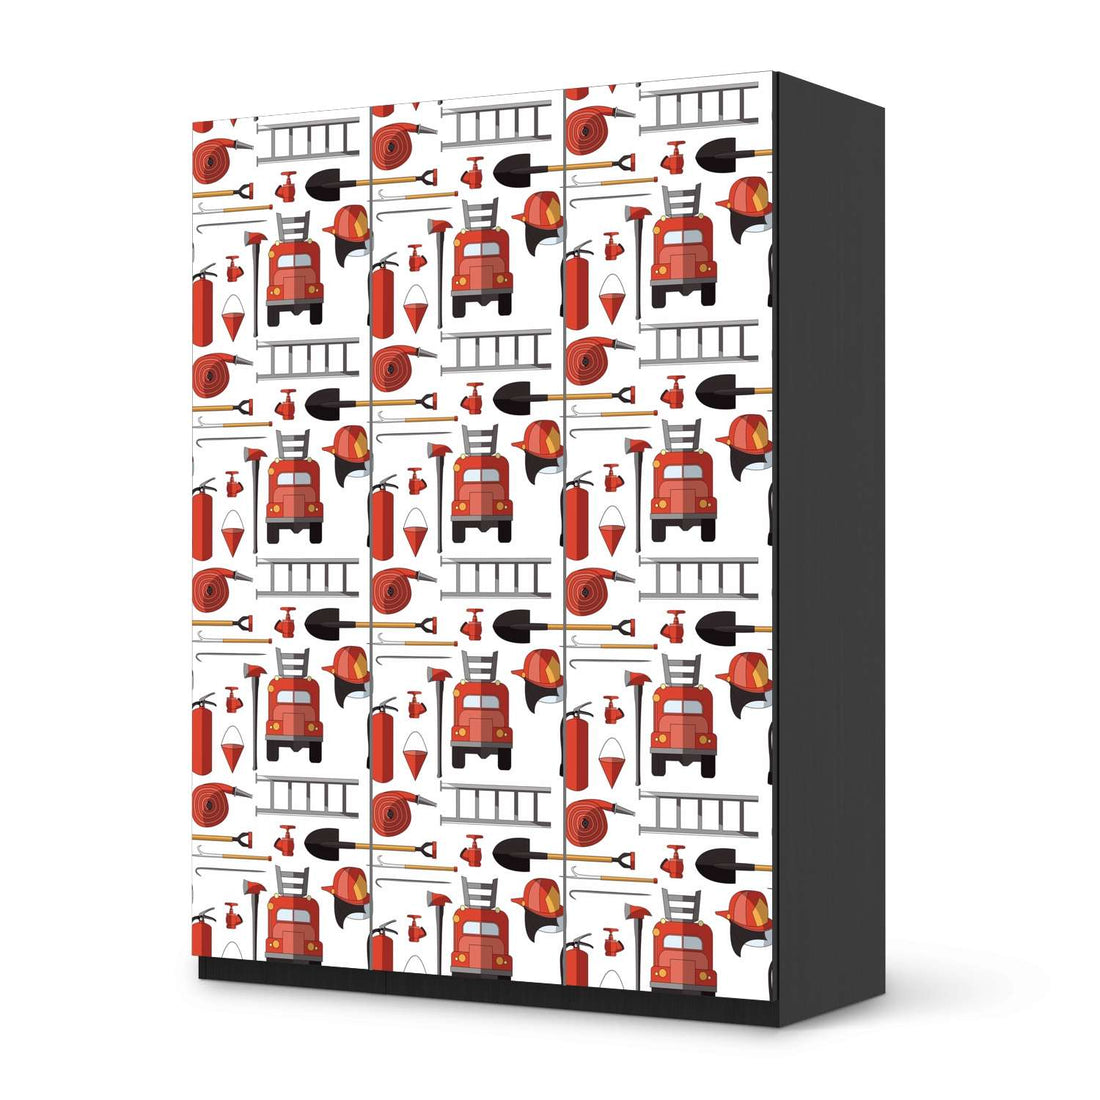 Folie für Möbel Firefighter - IKEA Pax Schrank 201 cm Höhe - 3 Türen - schwarz